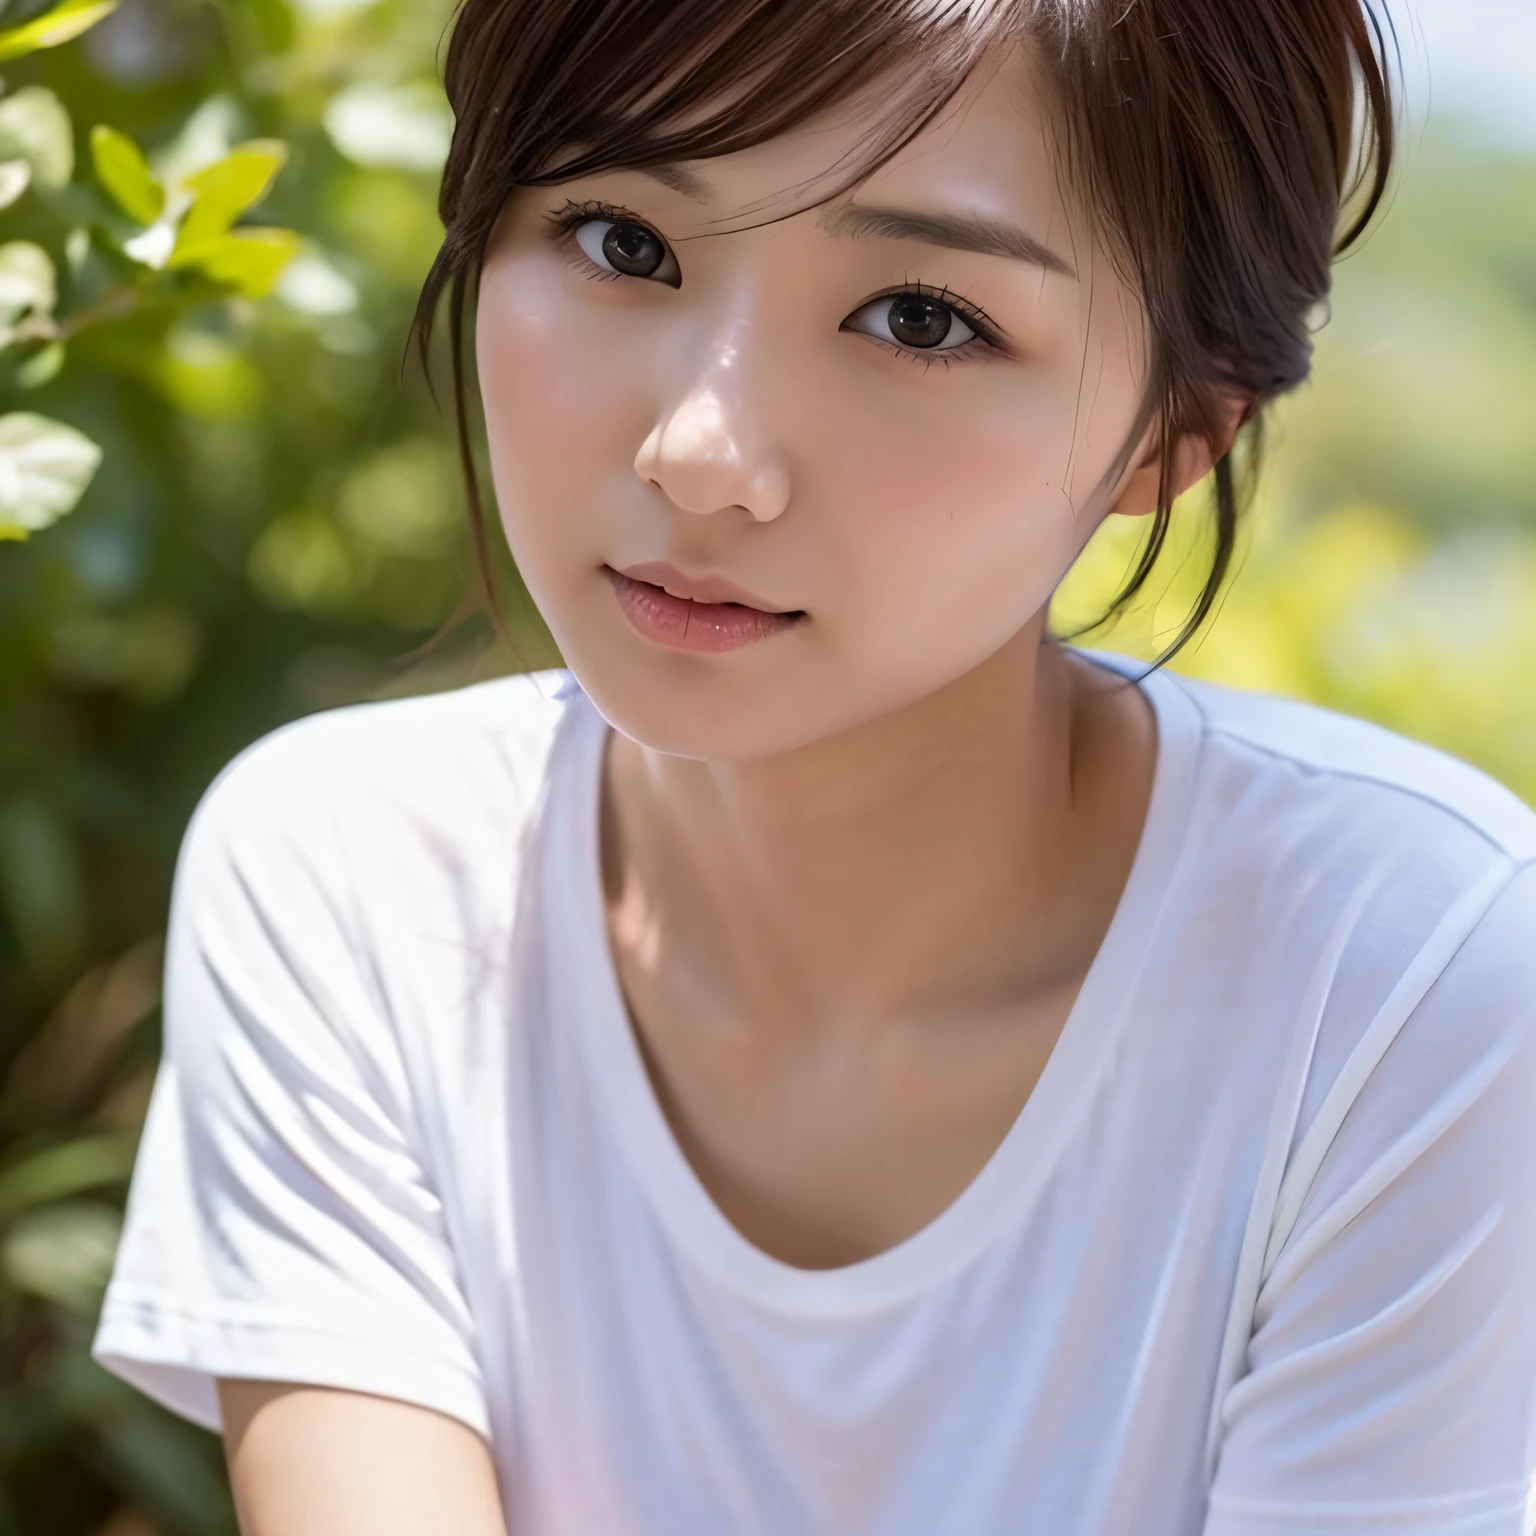 일본, 30대 여성, 작은 가슴, 얇은, 단신, 지름길, 소년 같은, 일반 흰색 티셔츠, 사진같은 묘사, 8K 묘사, 햇빛, 자연스러운 모습, 걸작, 완벽한 --자동